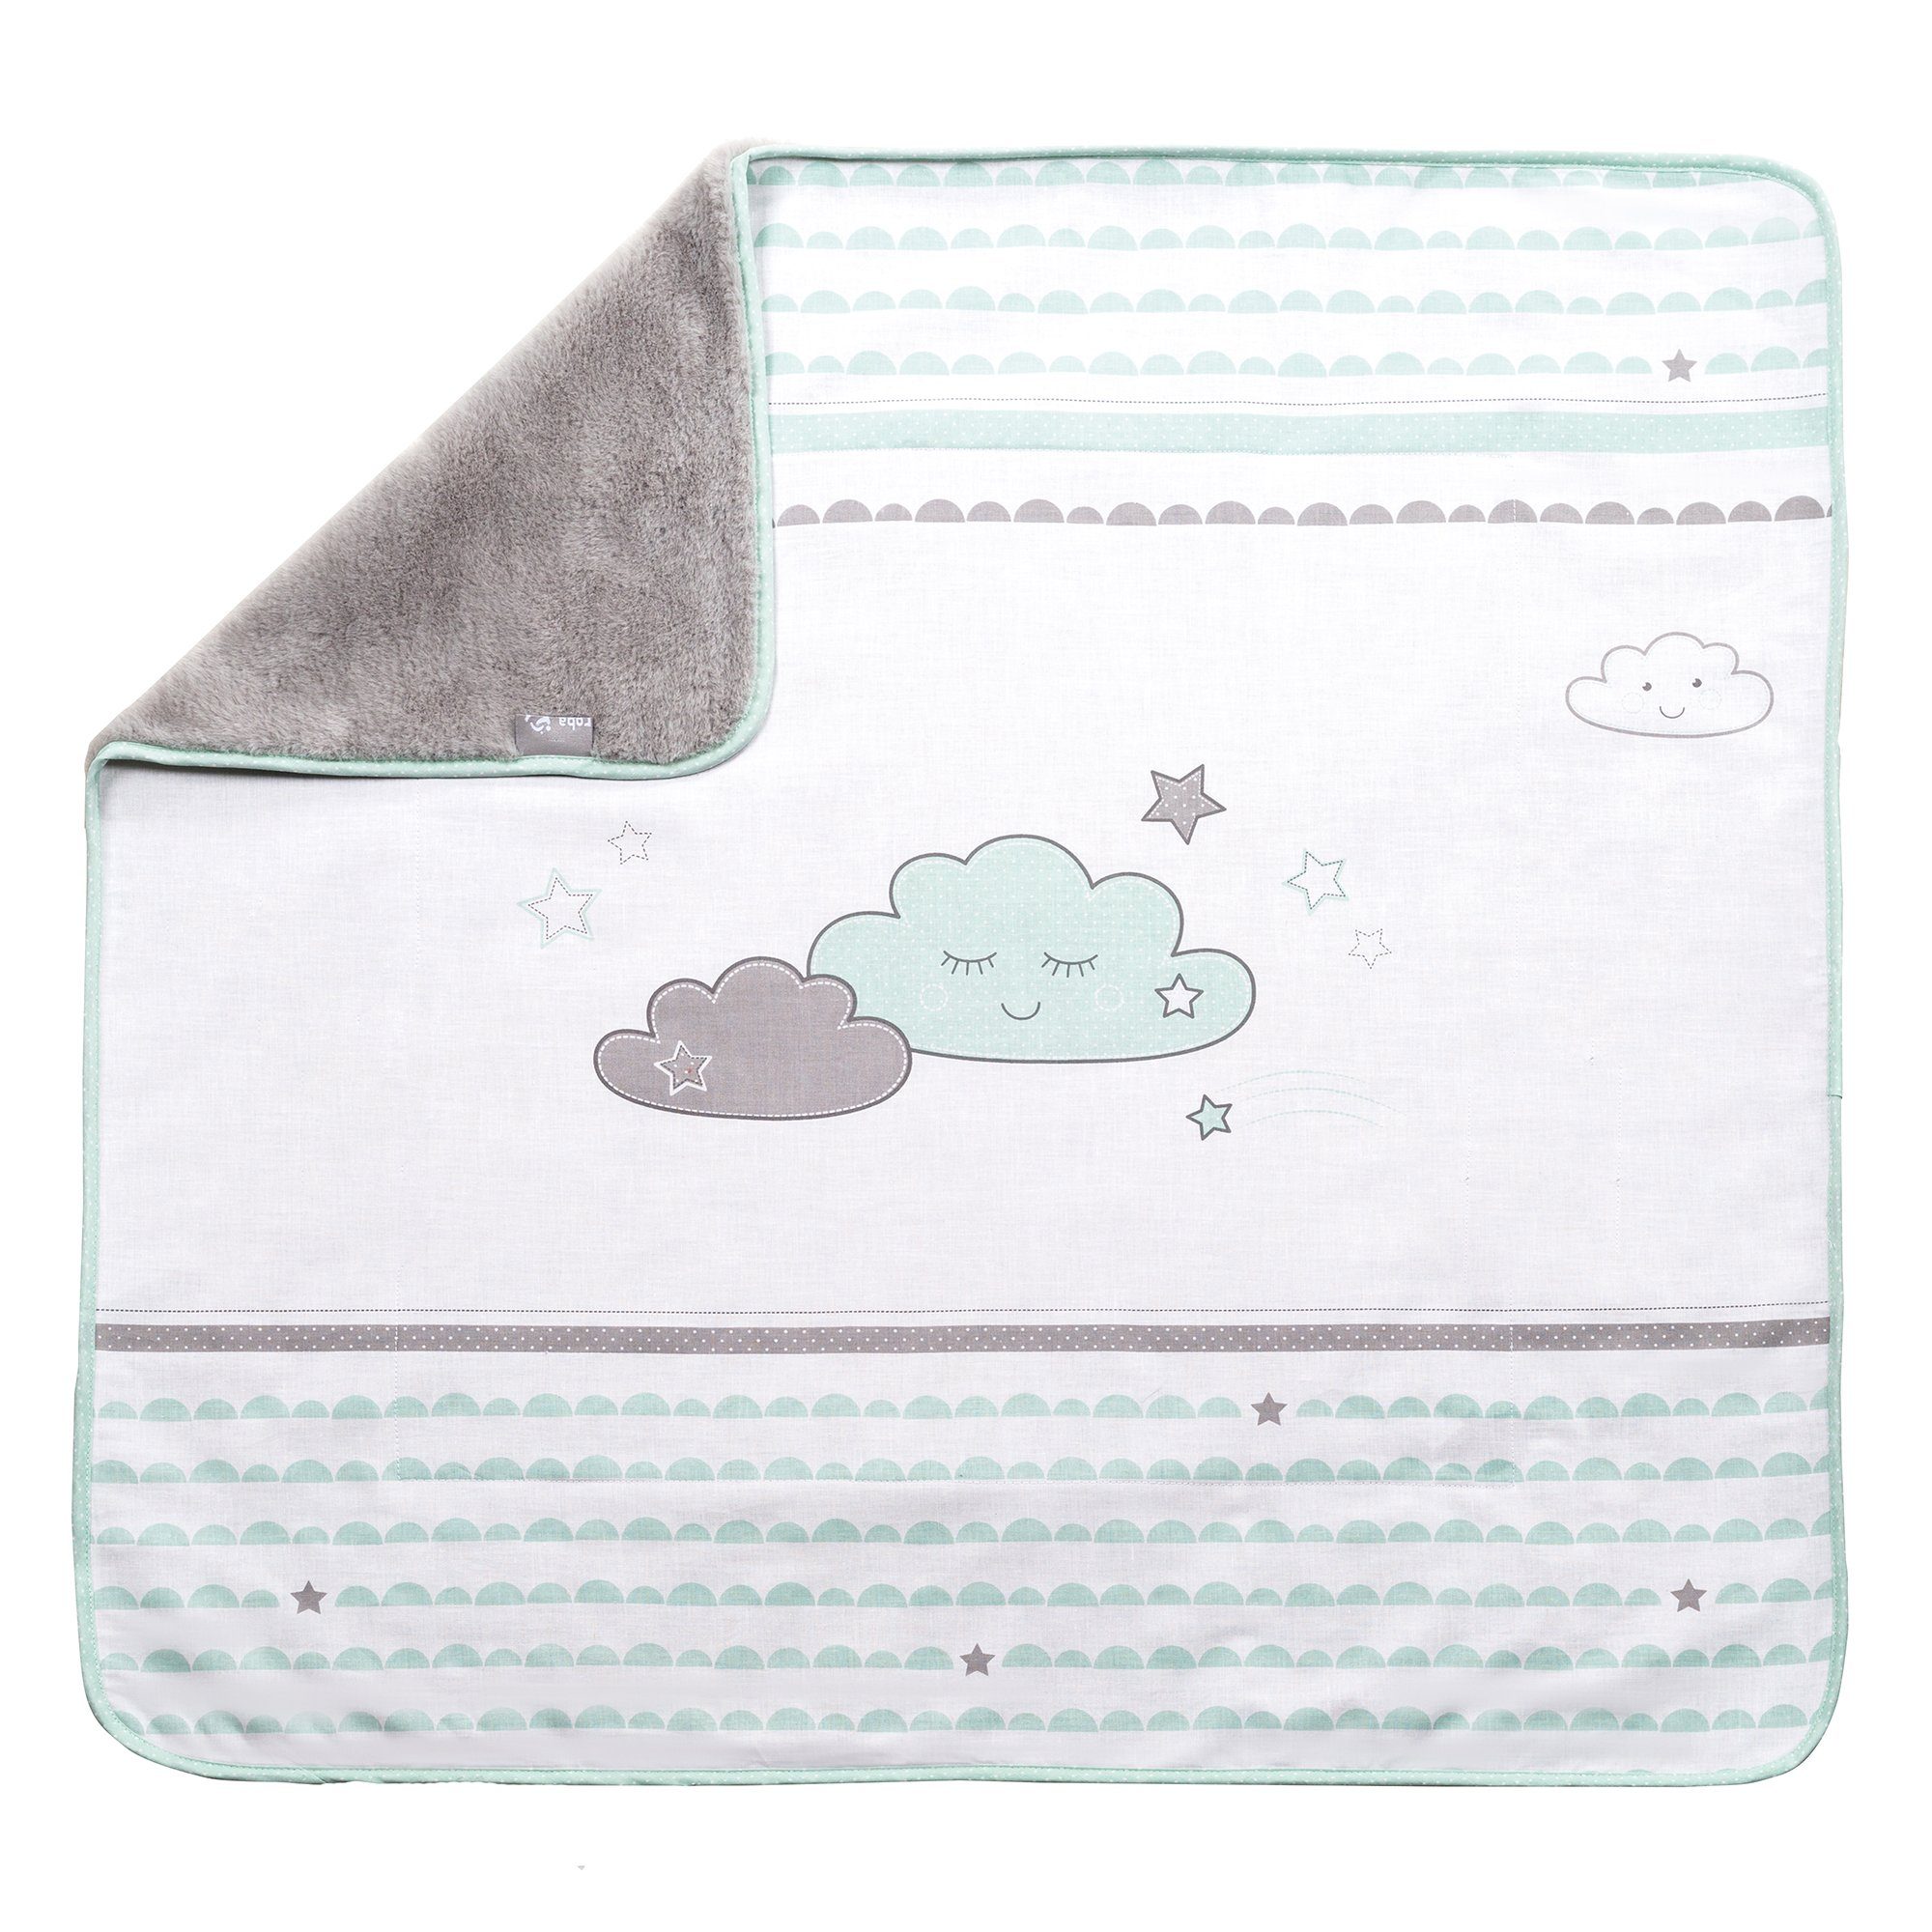 [Zu einem schockierenden Preis erhältlich!] Babydecke in verschiedenen Motiven, weich, warm & roba®, Cloud super flauschig Happy